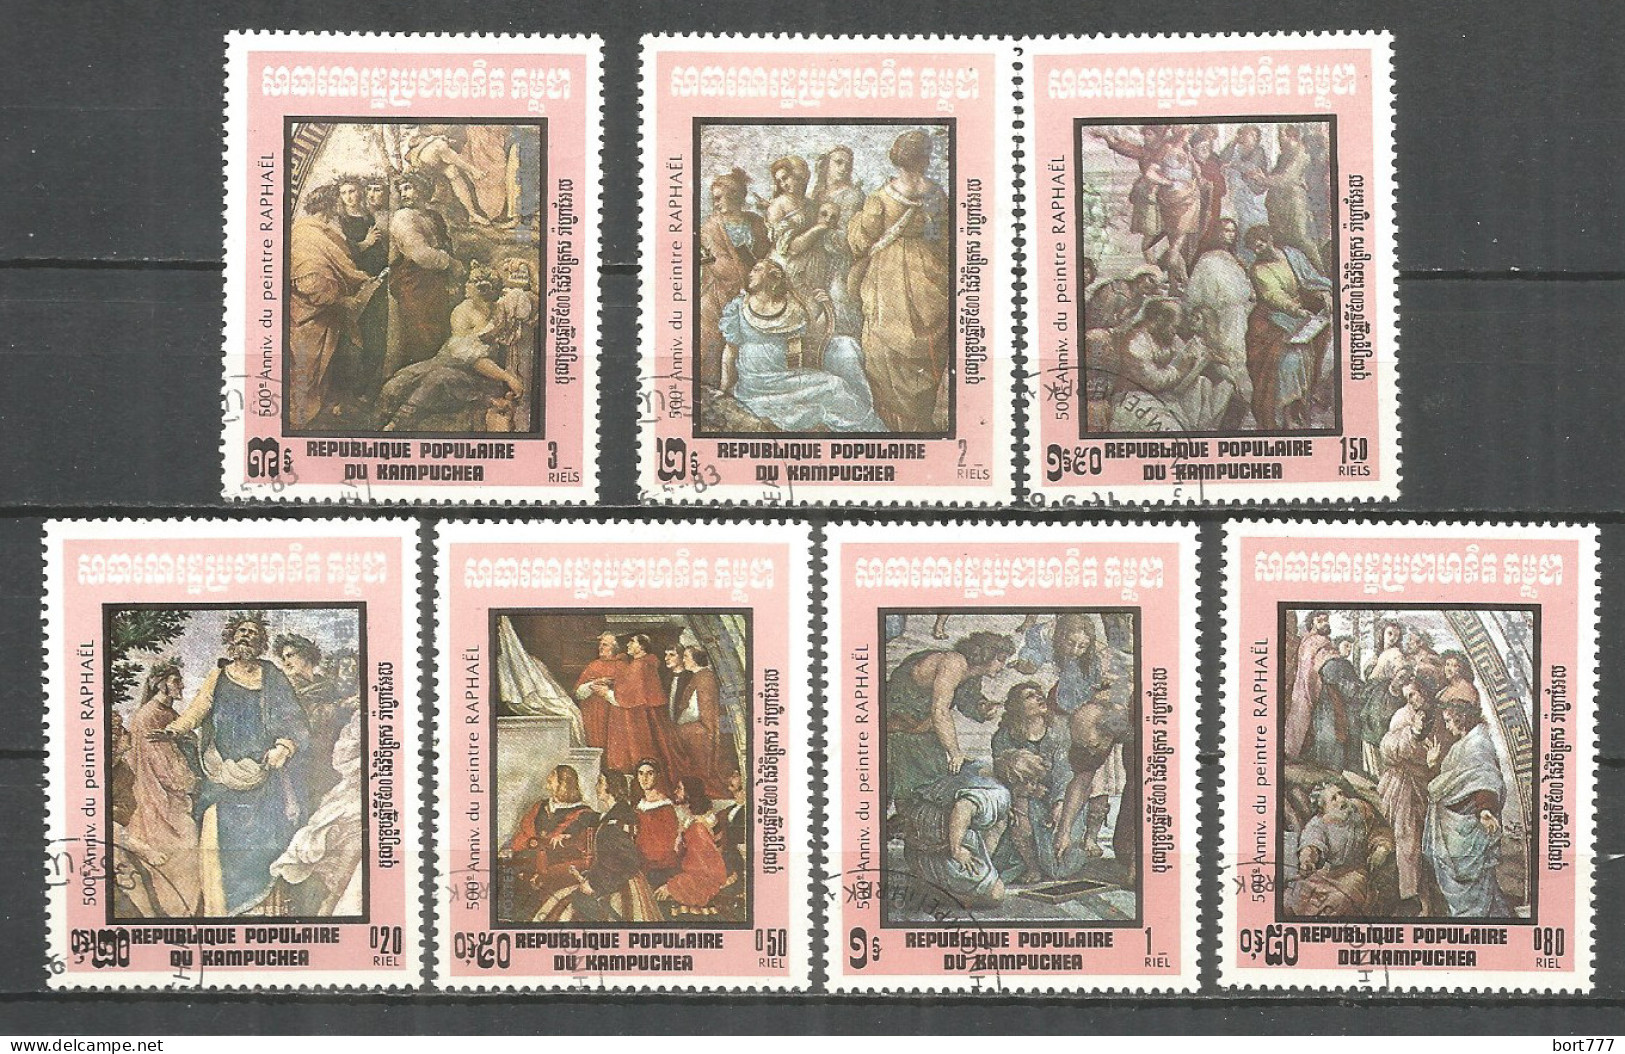 Kampuchea 1983 Year, Used Stamps  CTO Panting - Kampuchea